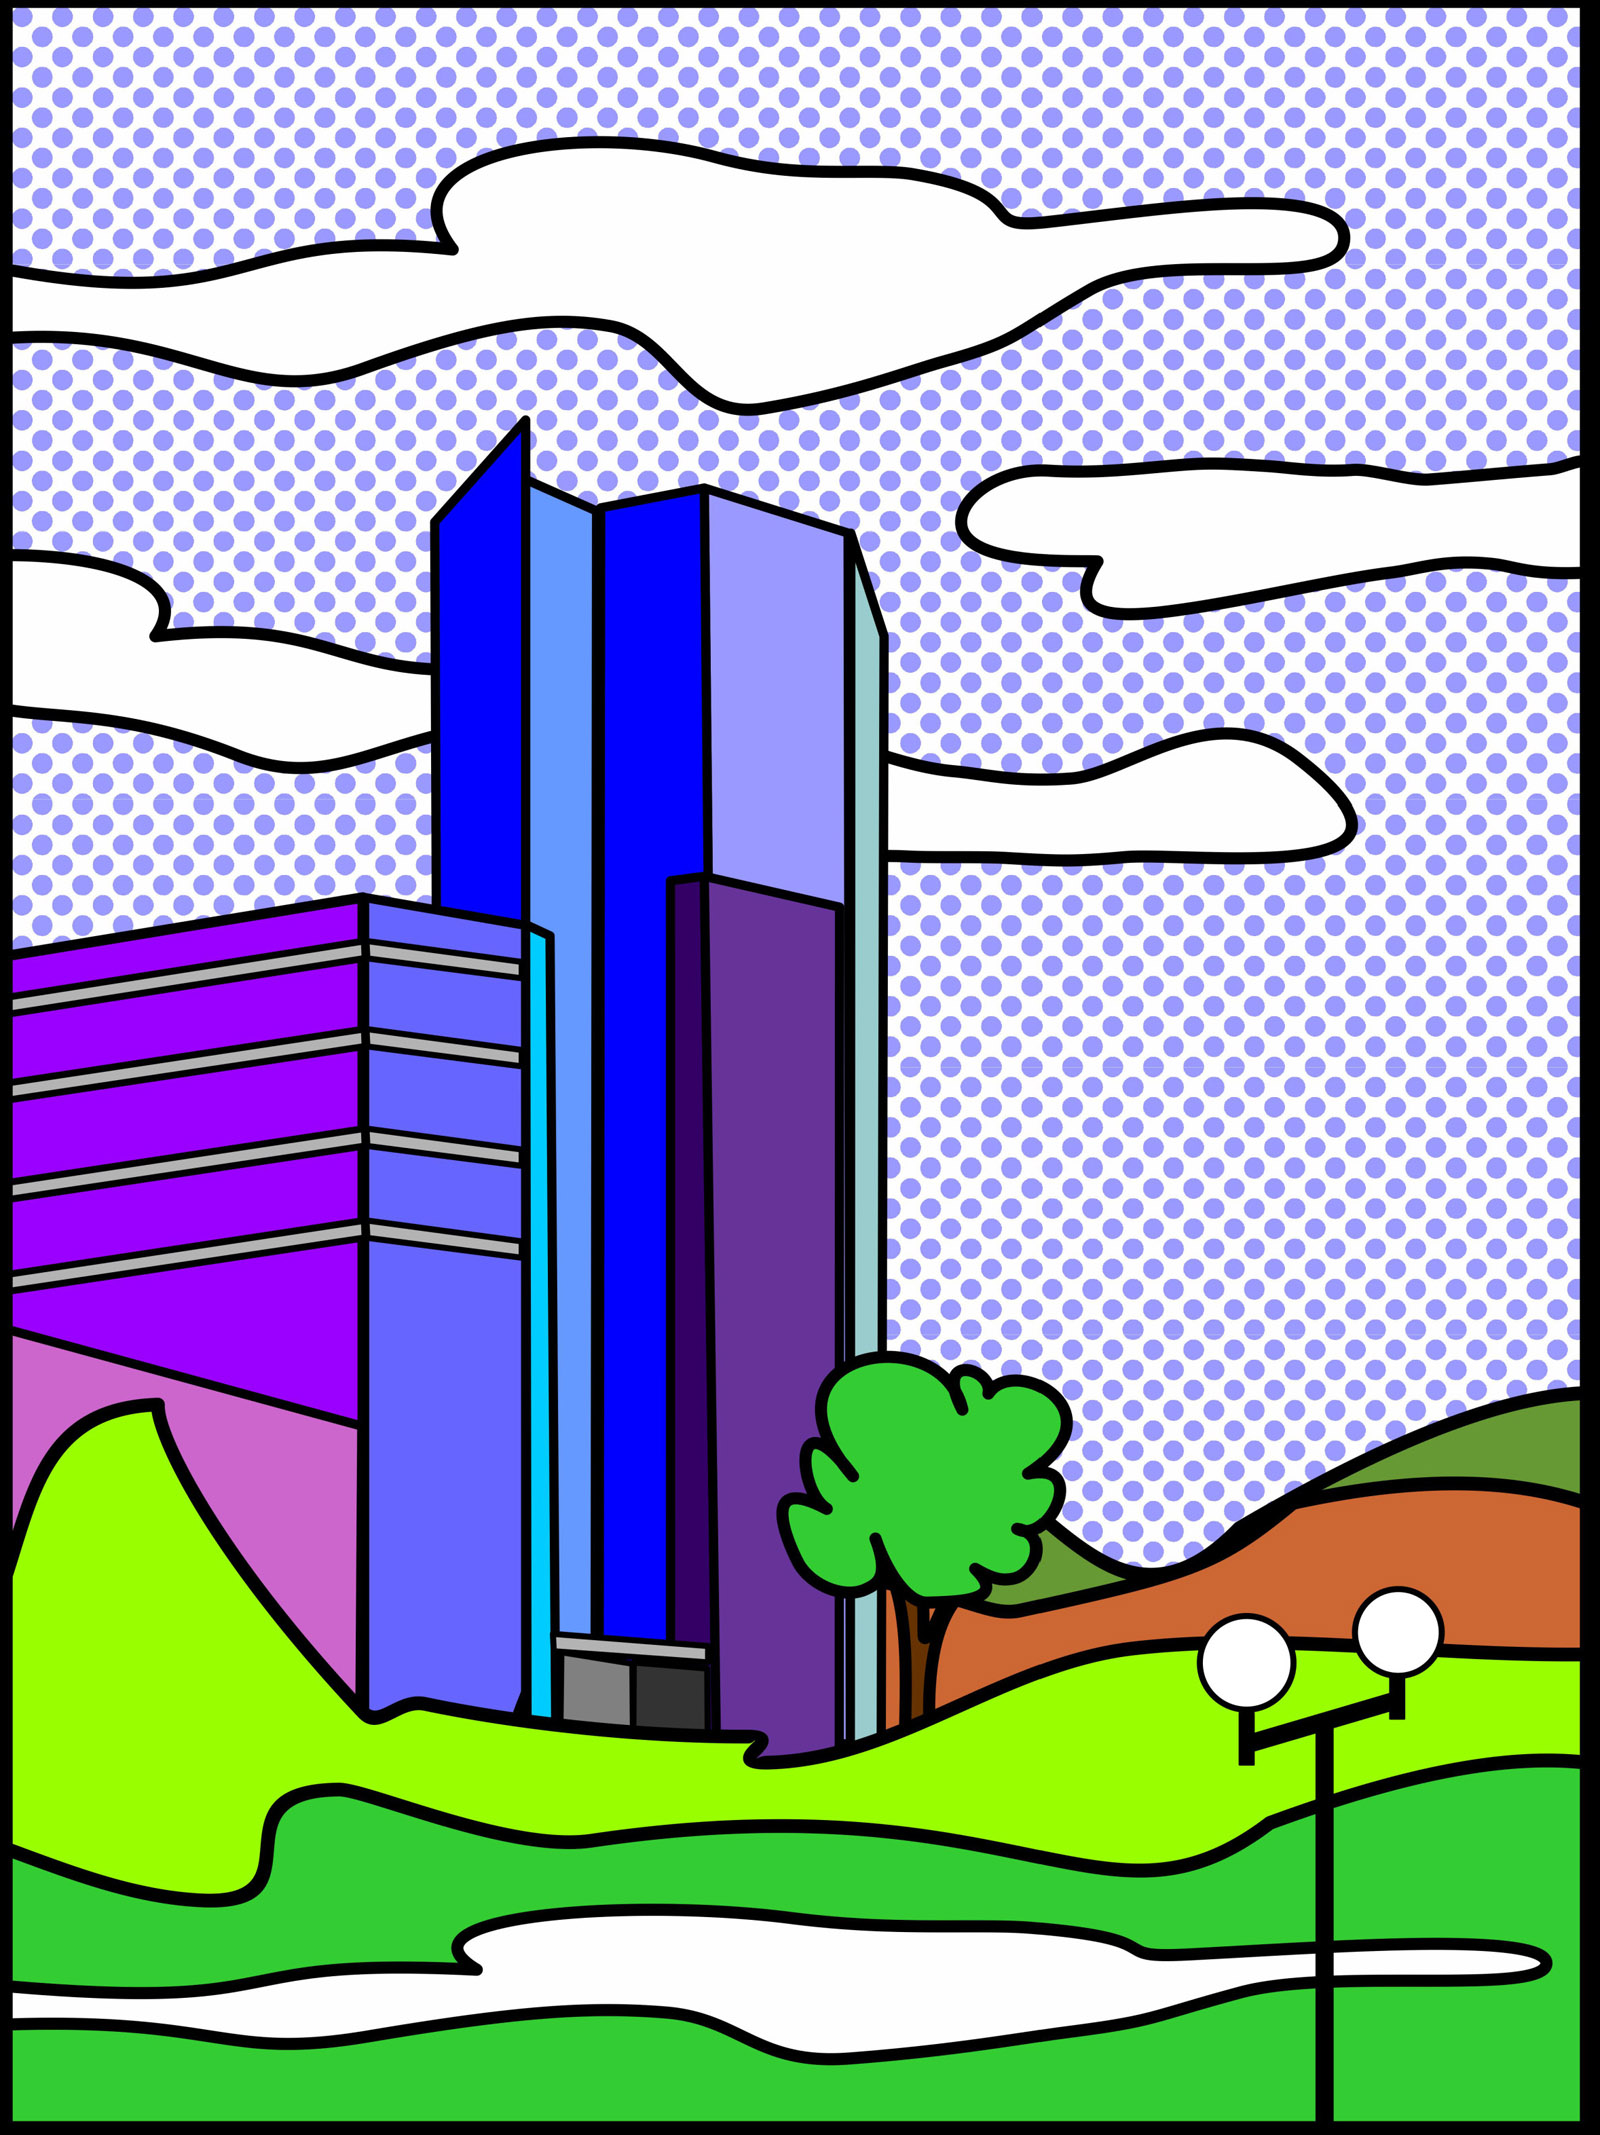 Marcellus M. Menke, Blue Tower I, digitally created image, Siegen 2012. Hommage à: Roy Lichtenstein: Read barn II, 1969. Postkarte, Siegen 2012